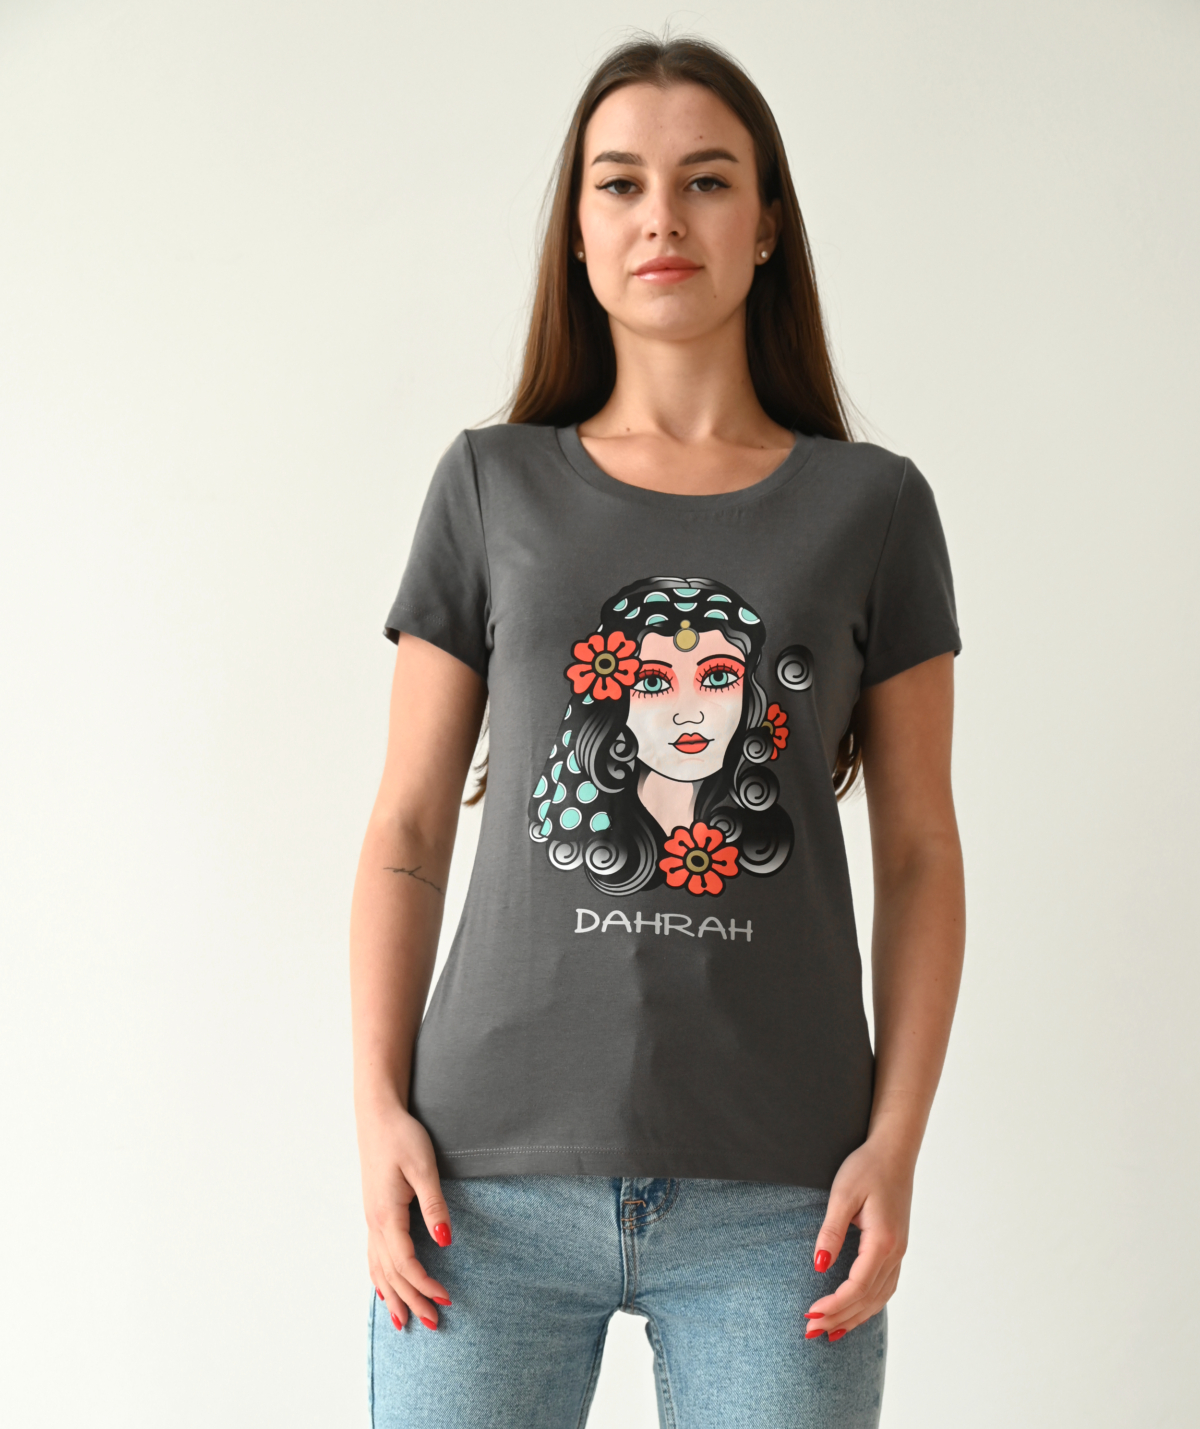 Dahrah Darah lady organic cotton T-shirt with print of a pirate girl.